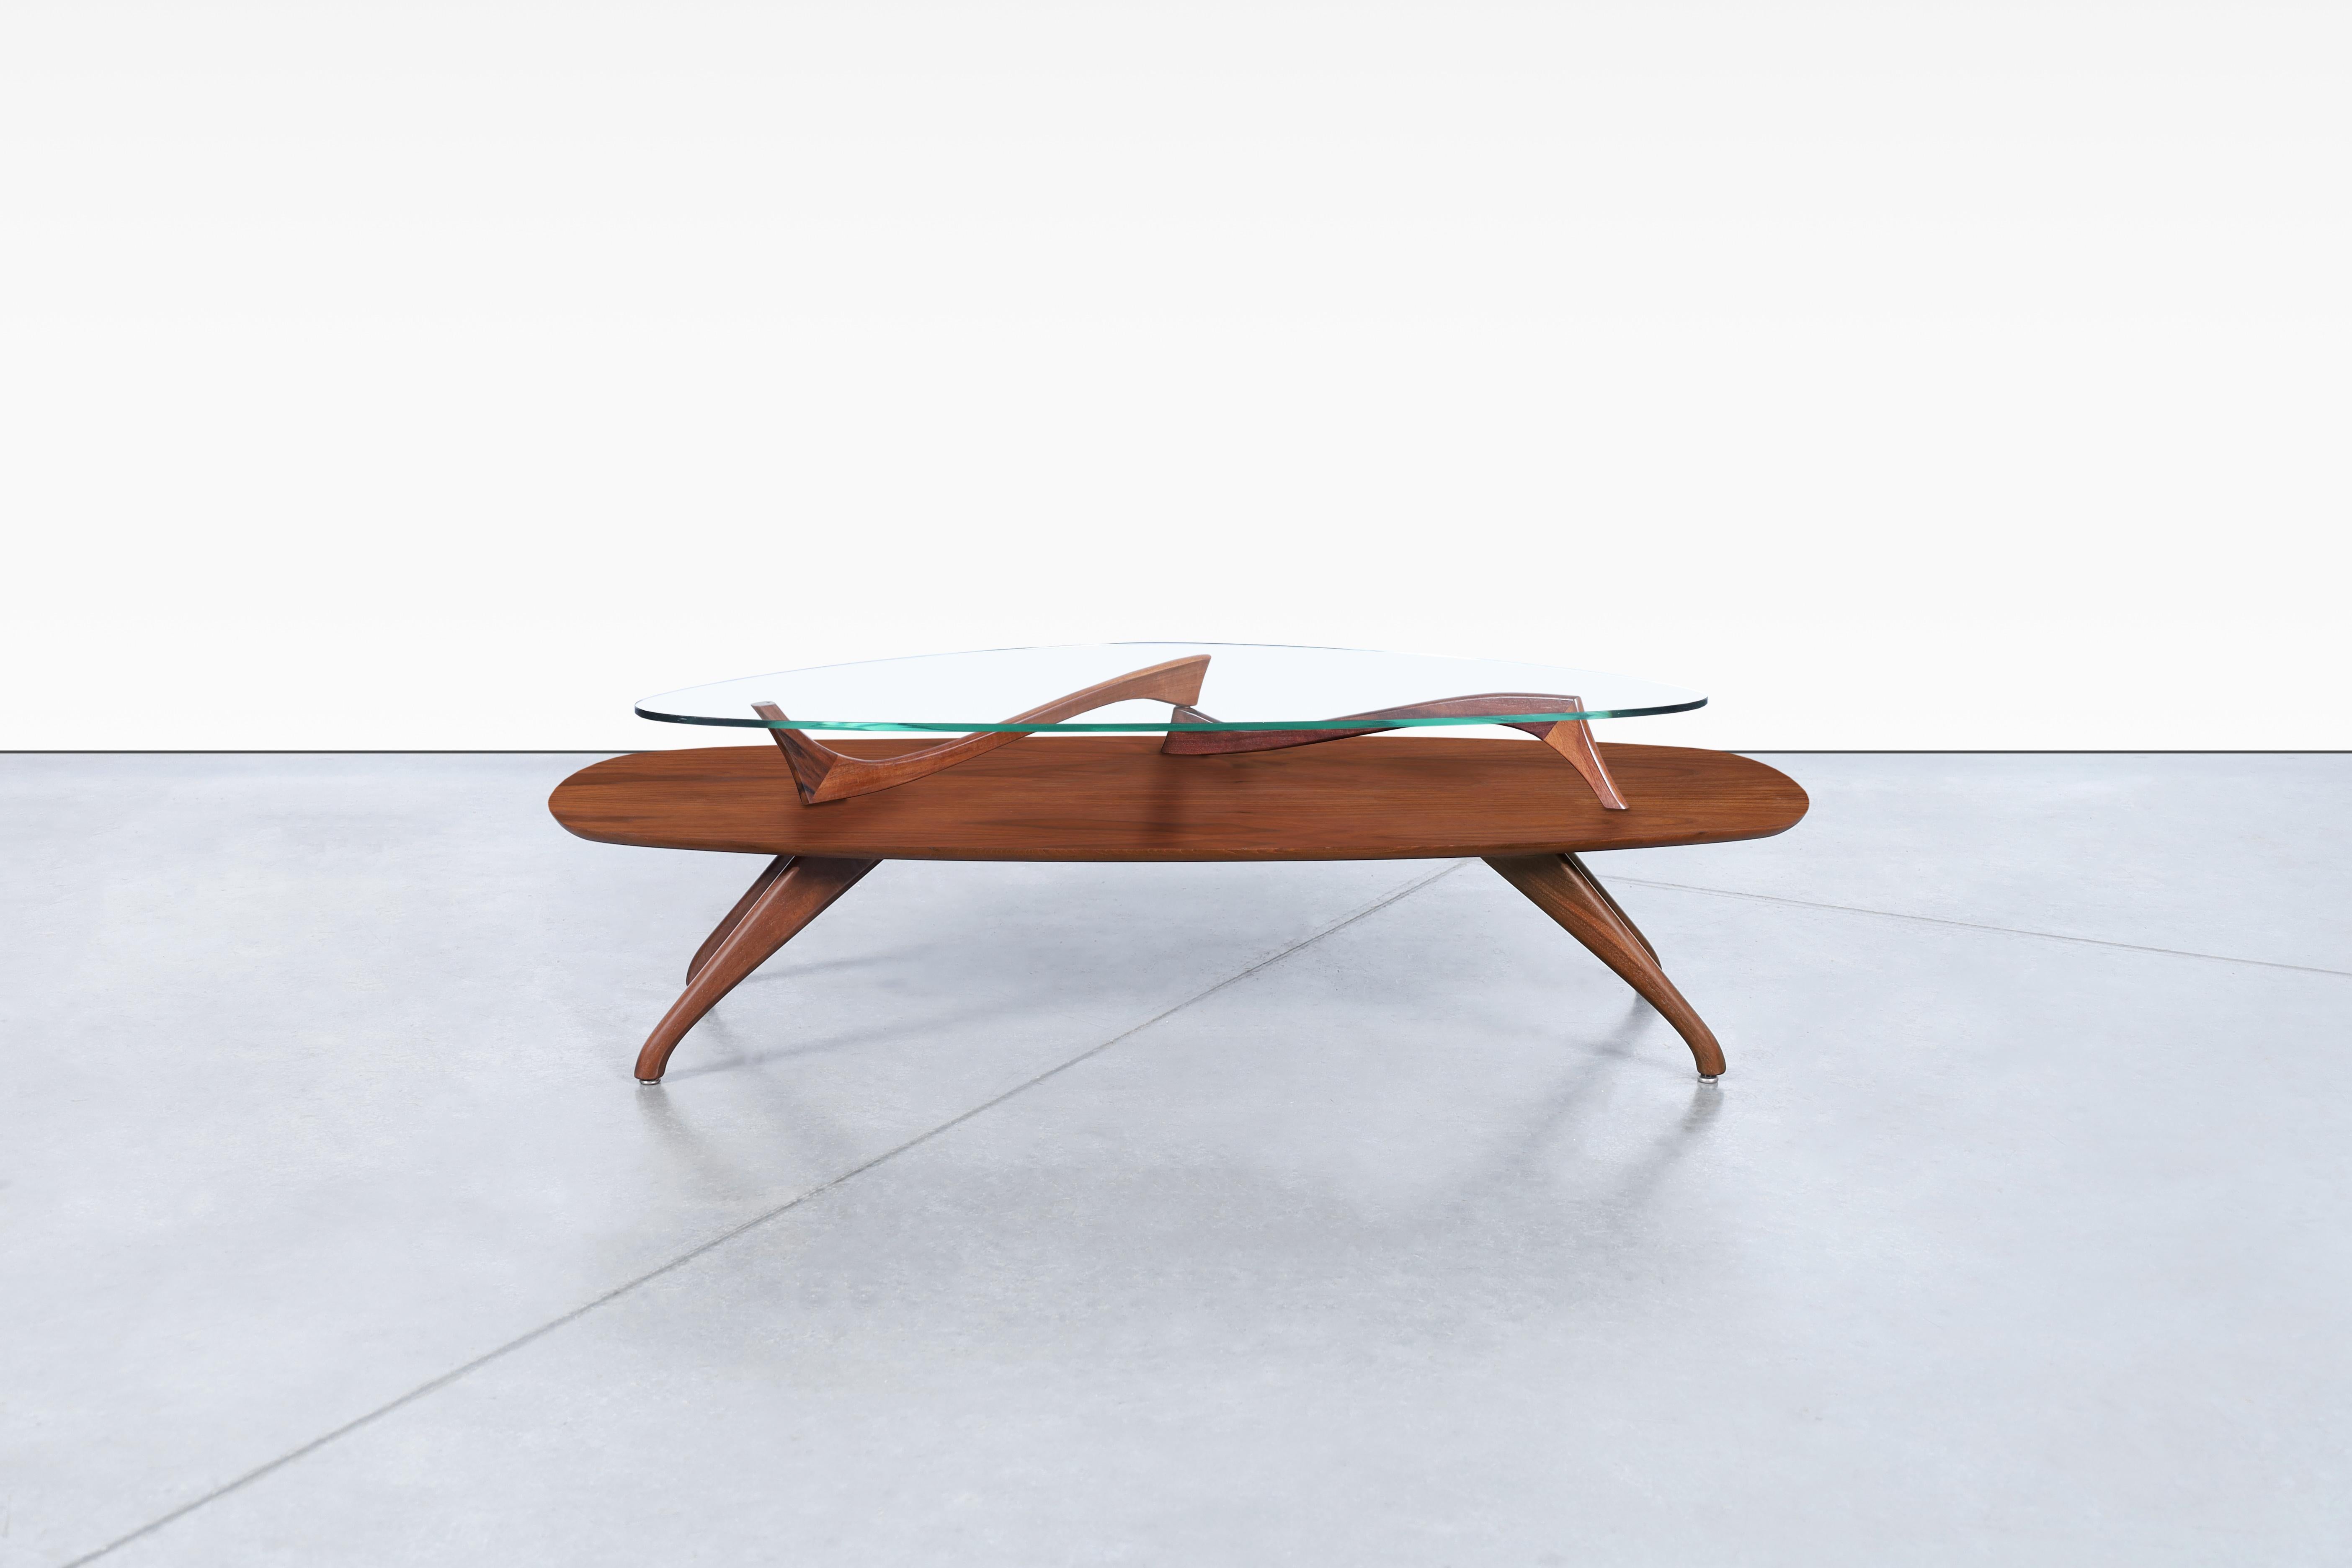 Cette étonnante table basse sculpturale vintage en noyer est un véritable chef-d'œuvre de design. Sa structure à deux niveaux comprend un grand plateau en forme de planche de surf en bois de noyer magnifique, avec un détail en noyer massif pris en